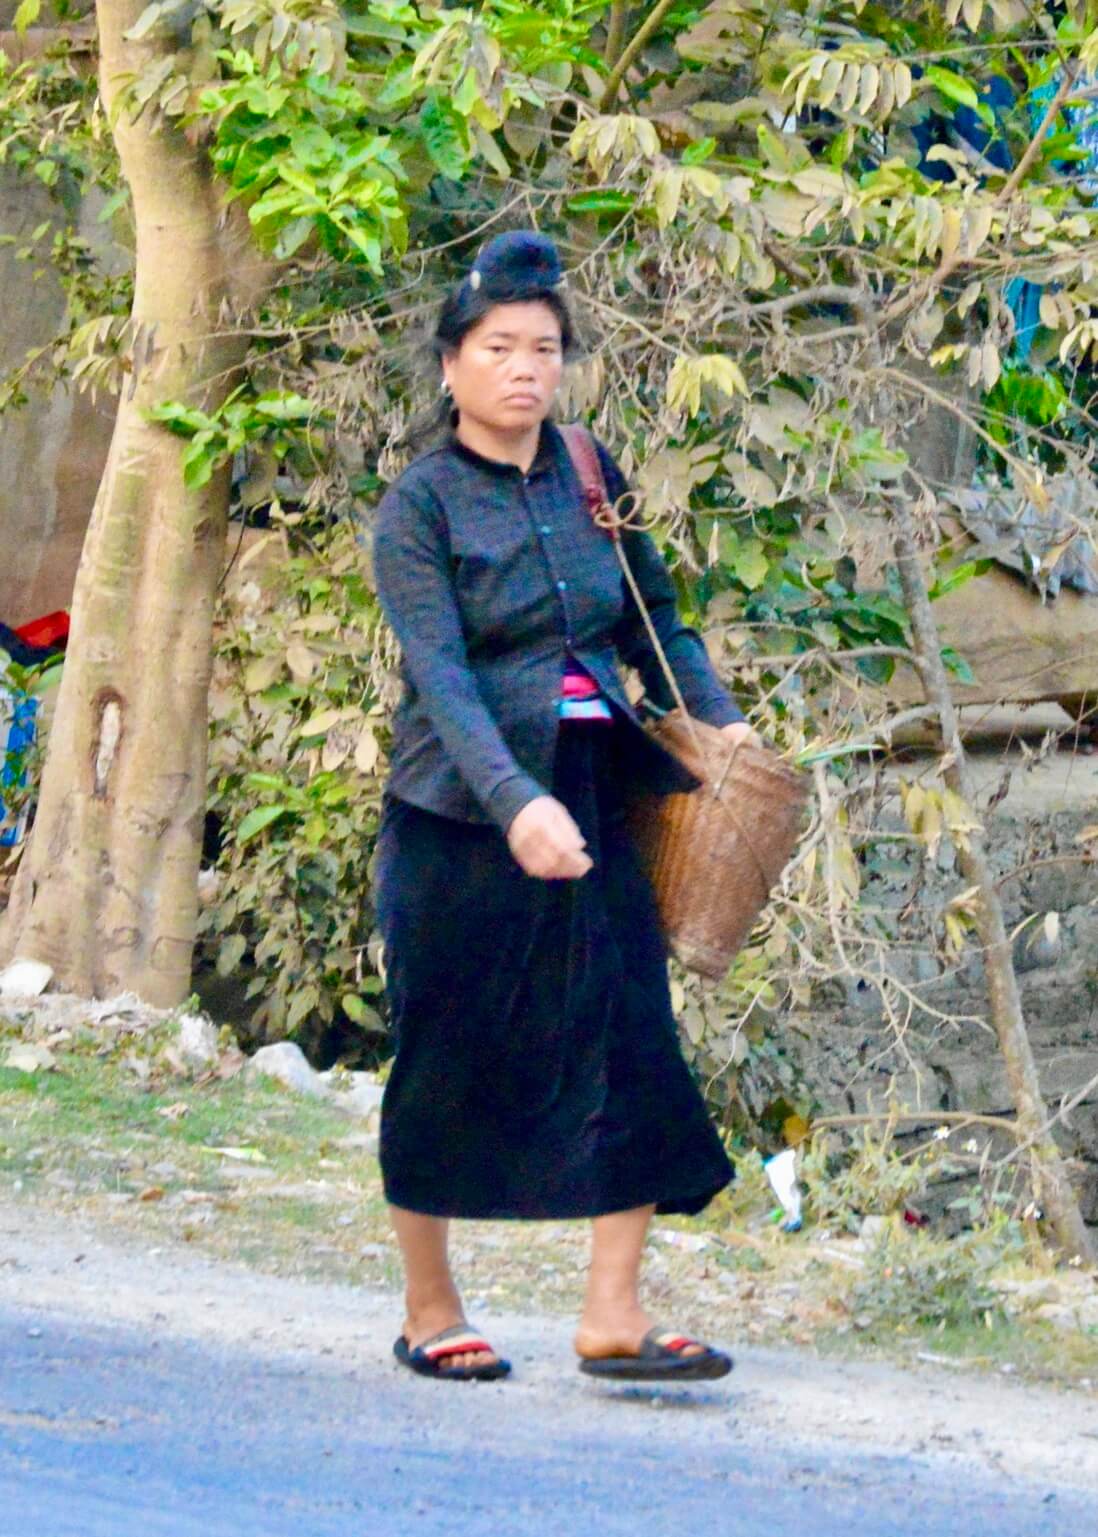  a Thai Woman walking down the street in Vietnam 